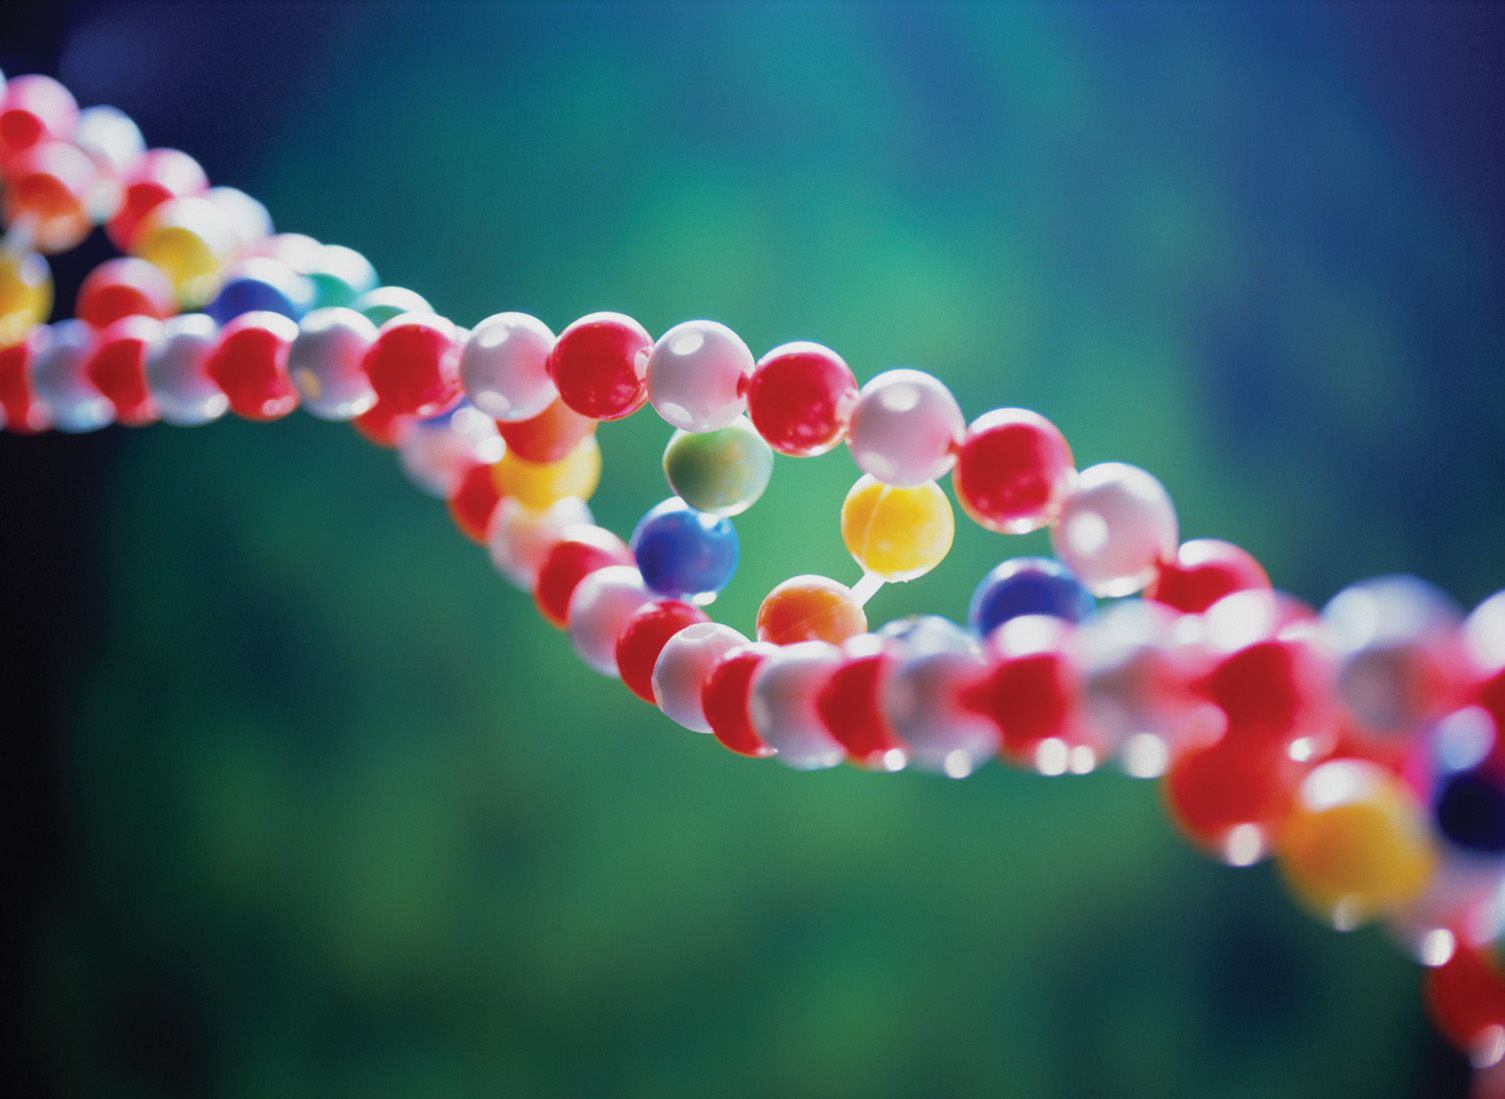 Ферменты помогли генетикам изменить ДНК